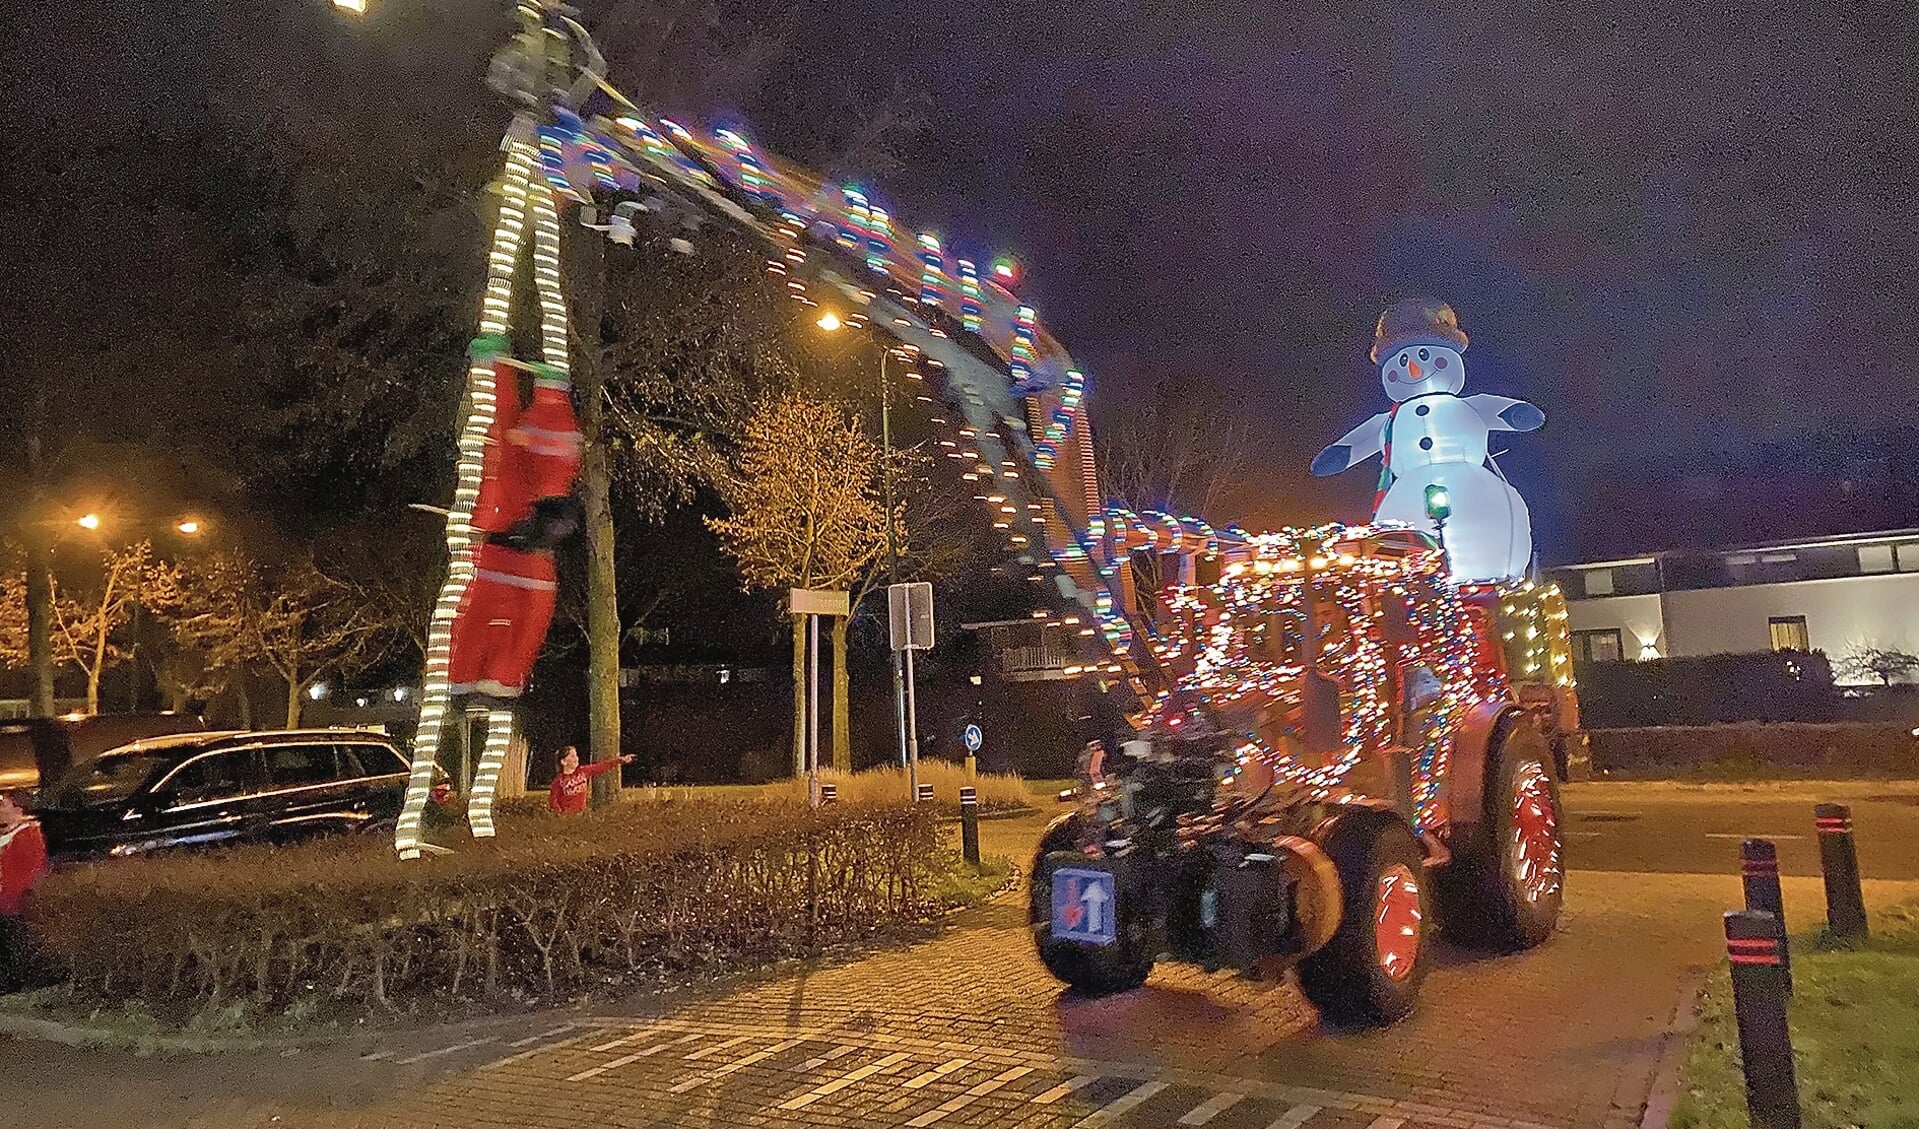 De mooist versierde tractor volgens de kinderen was toch wel deze met sneeuwpop en kerstman.